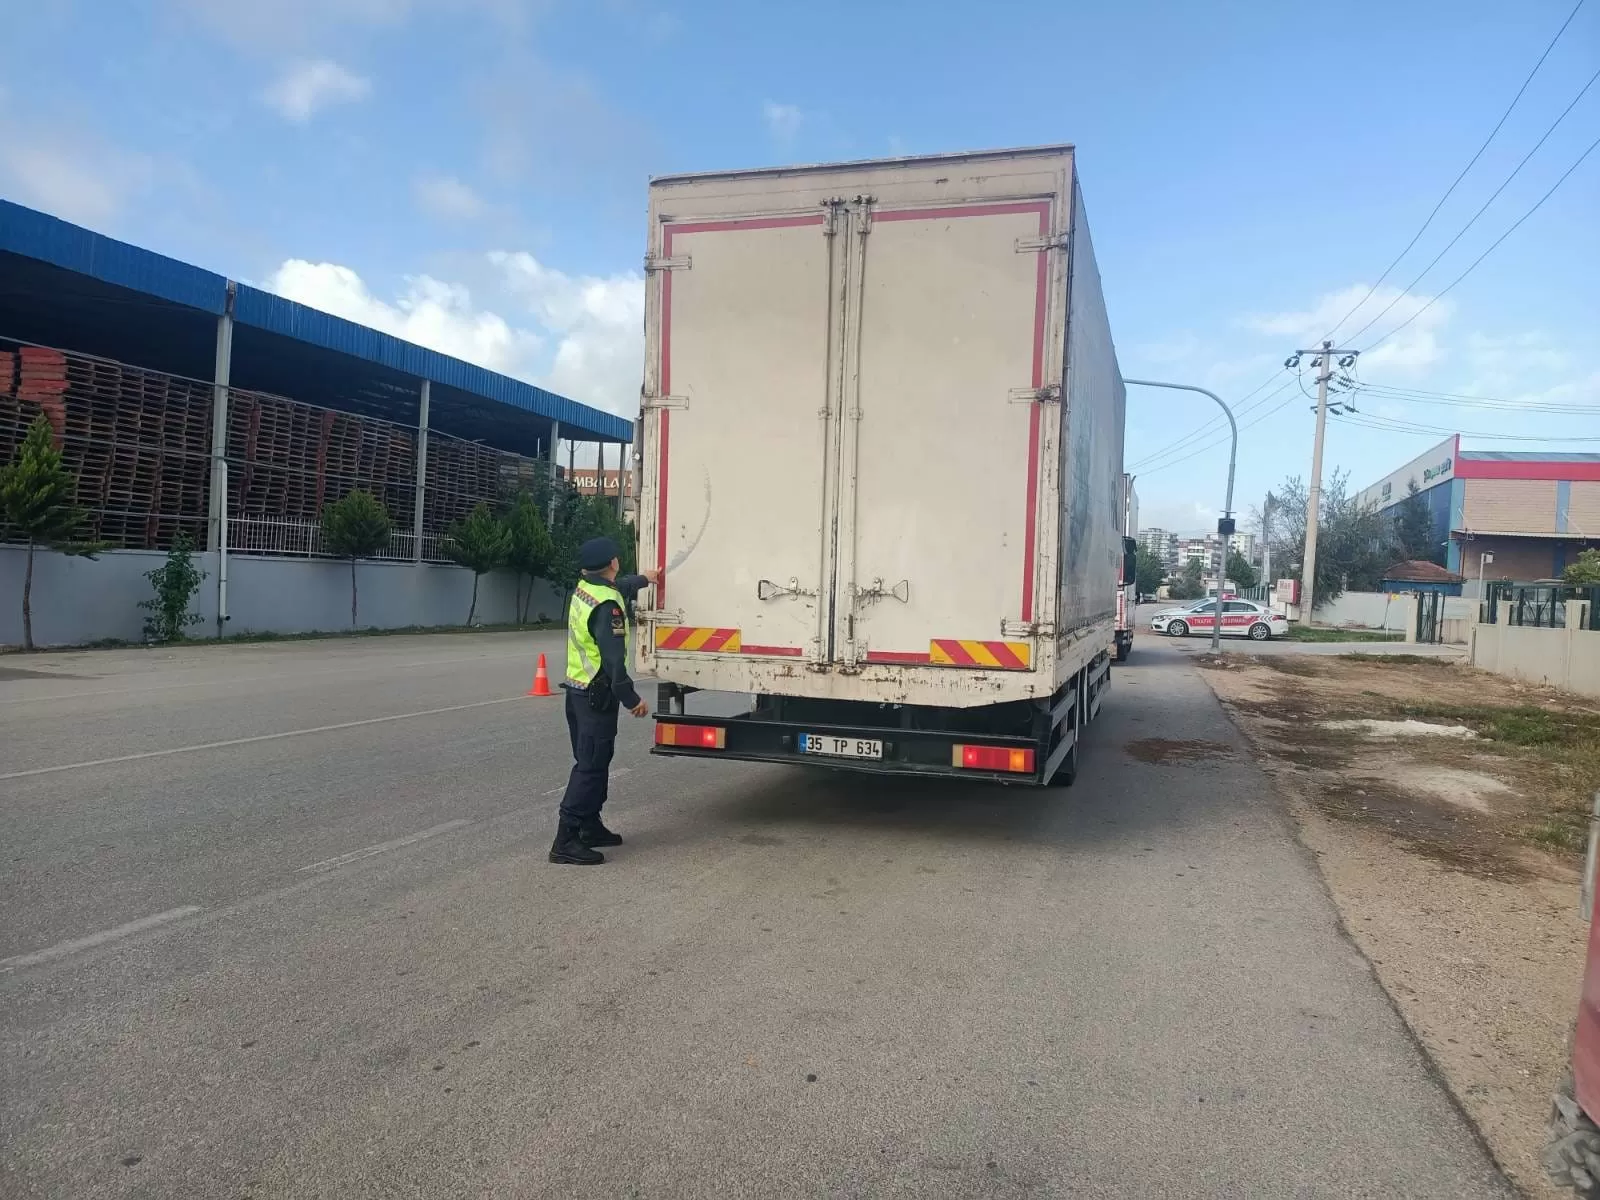 İzmir İl Jandarma Komutanlığı, kent genelinde yük ve yolcu taşıyan ticari araçların denetimini sıklaştırarak, mevzuata uymayan araçlara karşı etkili önlemler aldı. 